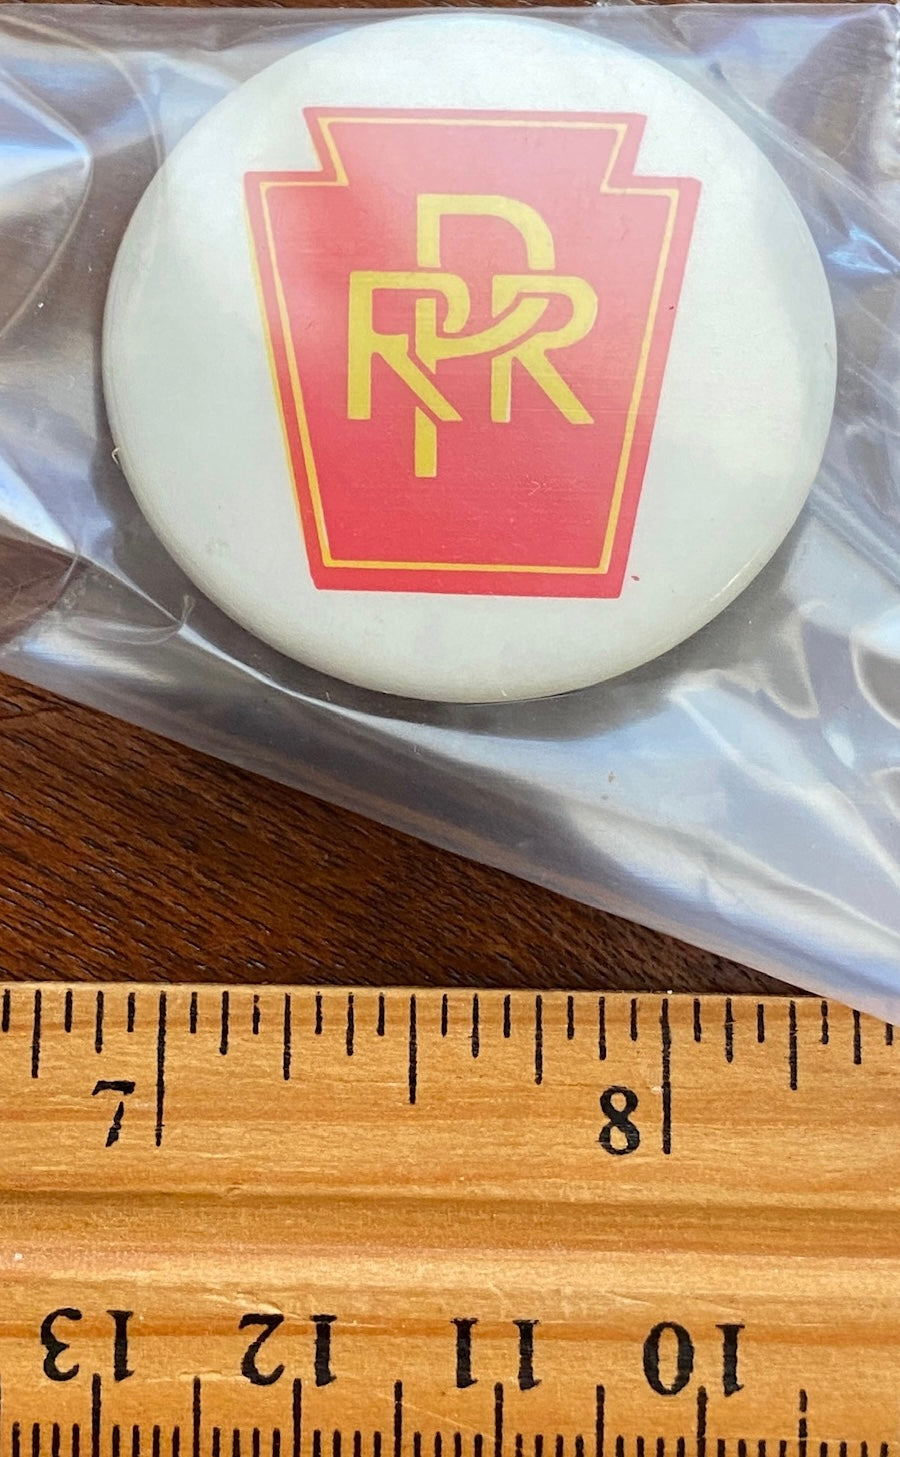 PRR Pennsylvania Railroad Souvenir Button Pin